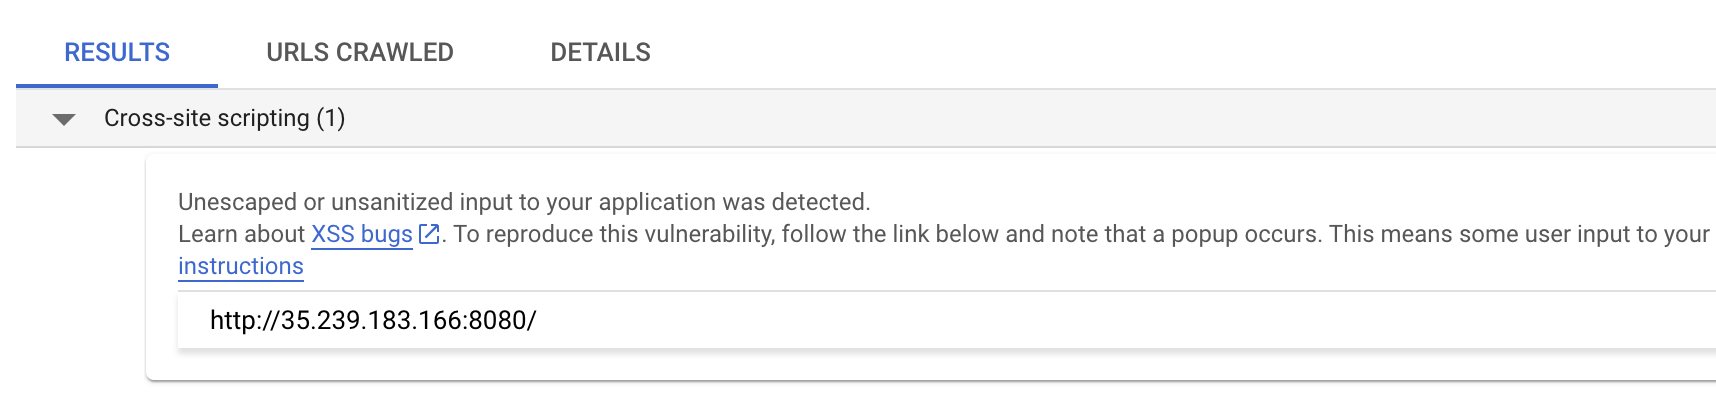 Resultados de Web Security Scanner con vulnerabilidades